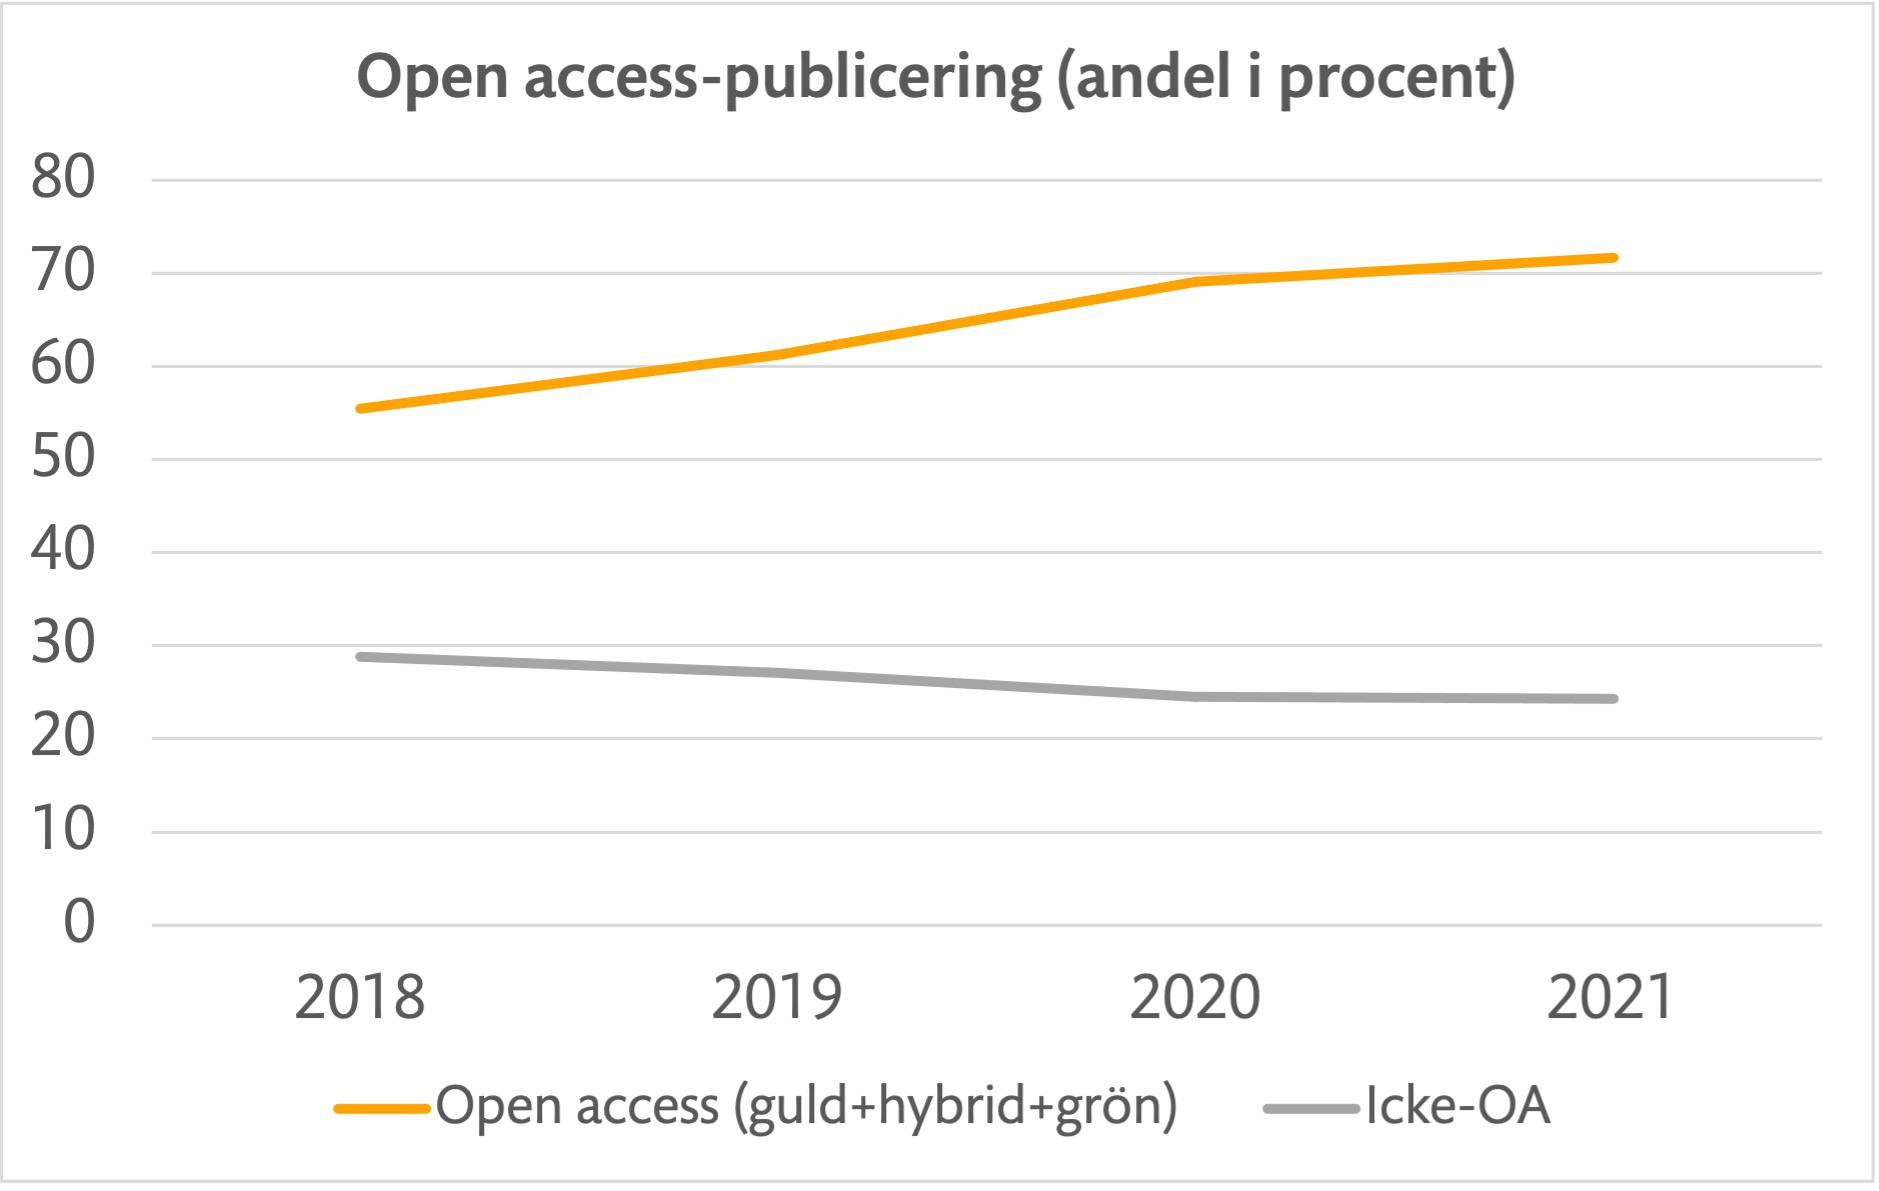 Andelen artiklar och reviewartiklar från KI som publiceras open access ökar under perioden 2018-2021. Andelen som publicerats som guld, hybrid eller grön open access har ökat från 55% 2018 till preliminärt 72% för 2021.